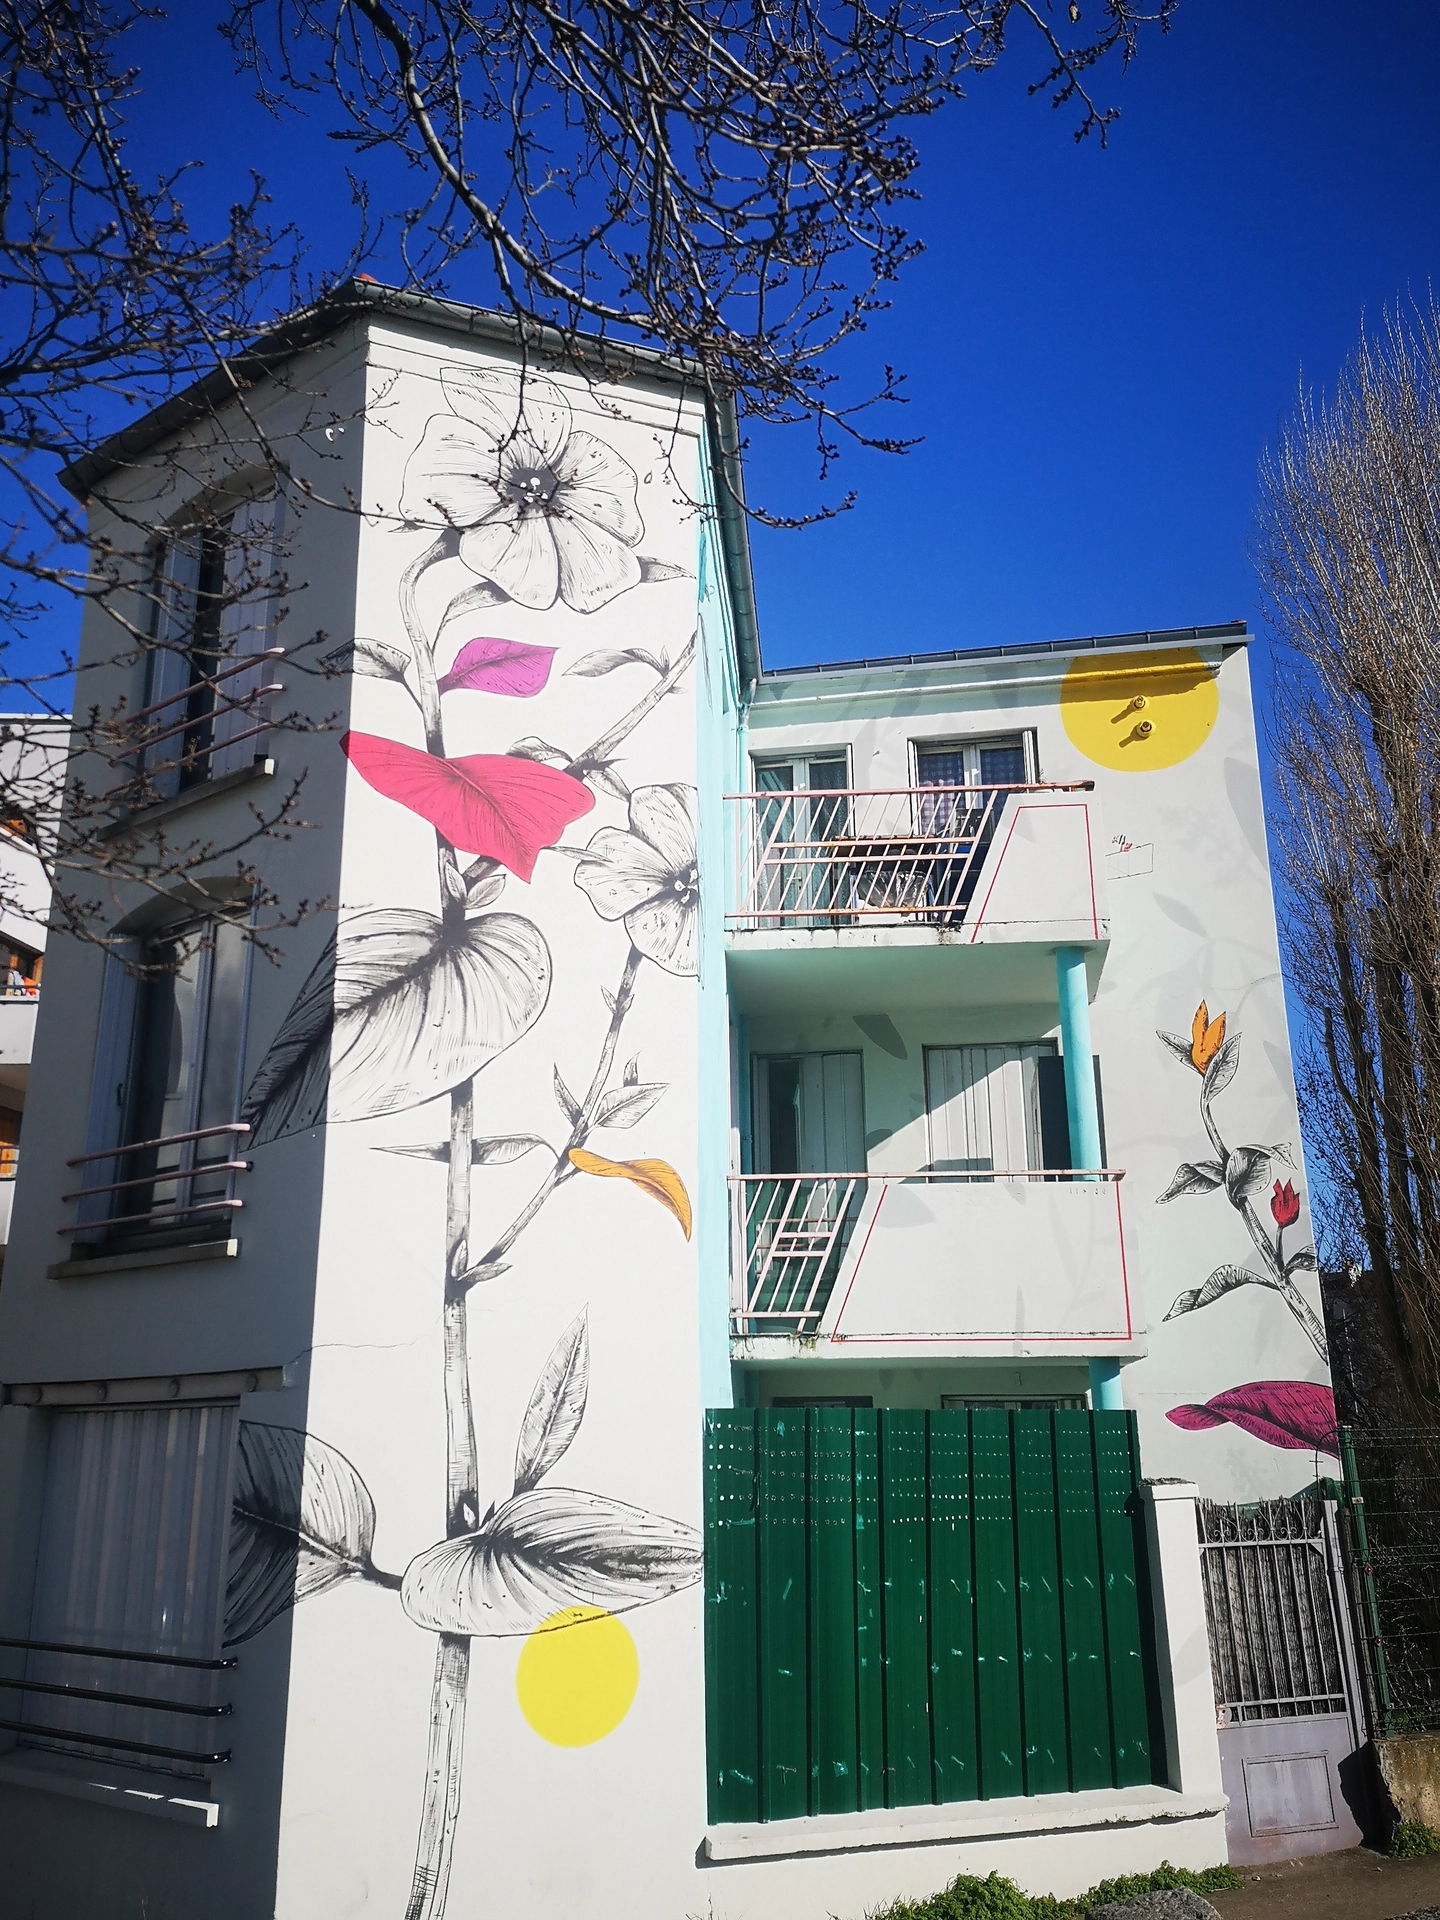 Oeuvre de Street Art réalisée par Fabio Petani à Saint-Denis